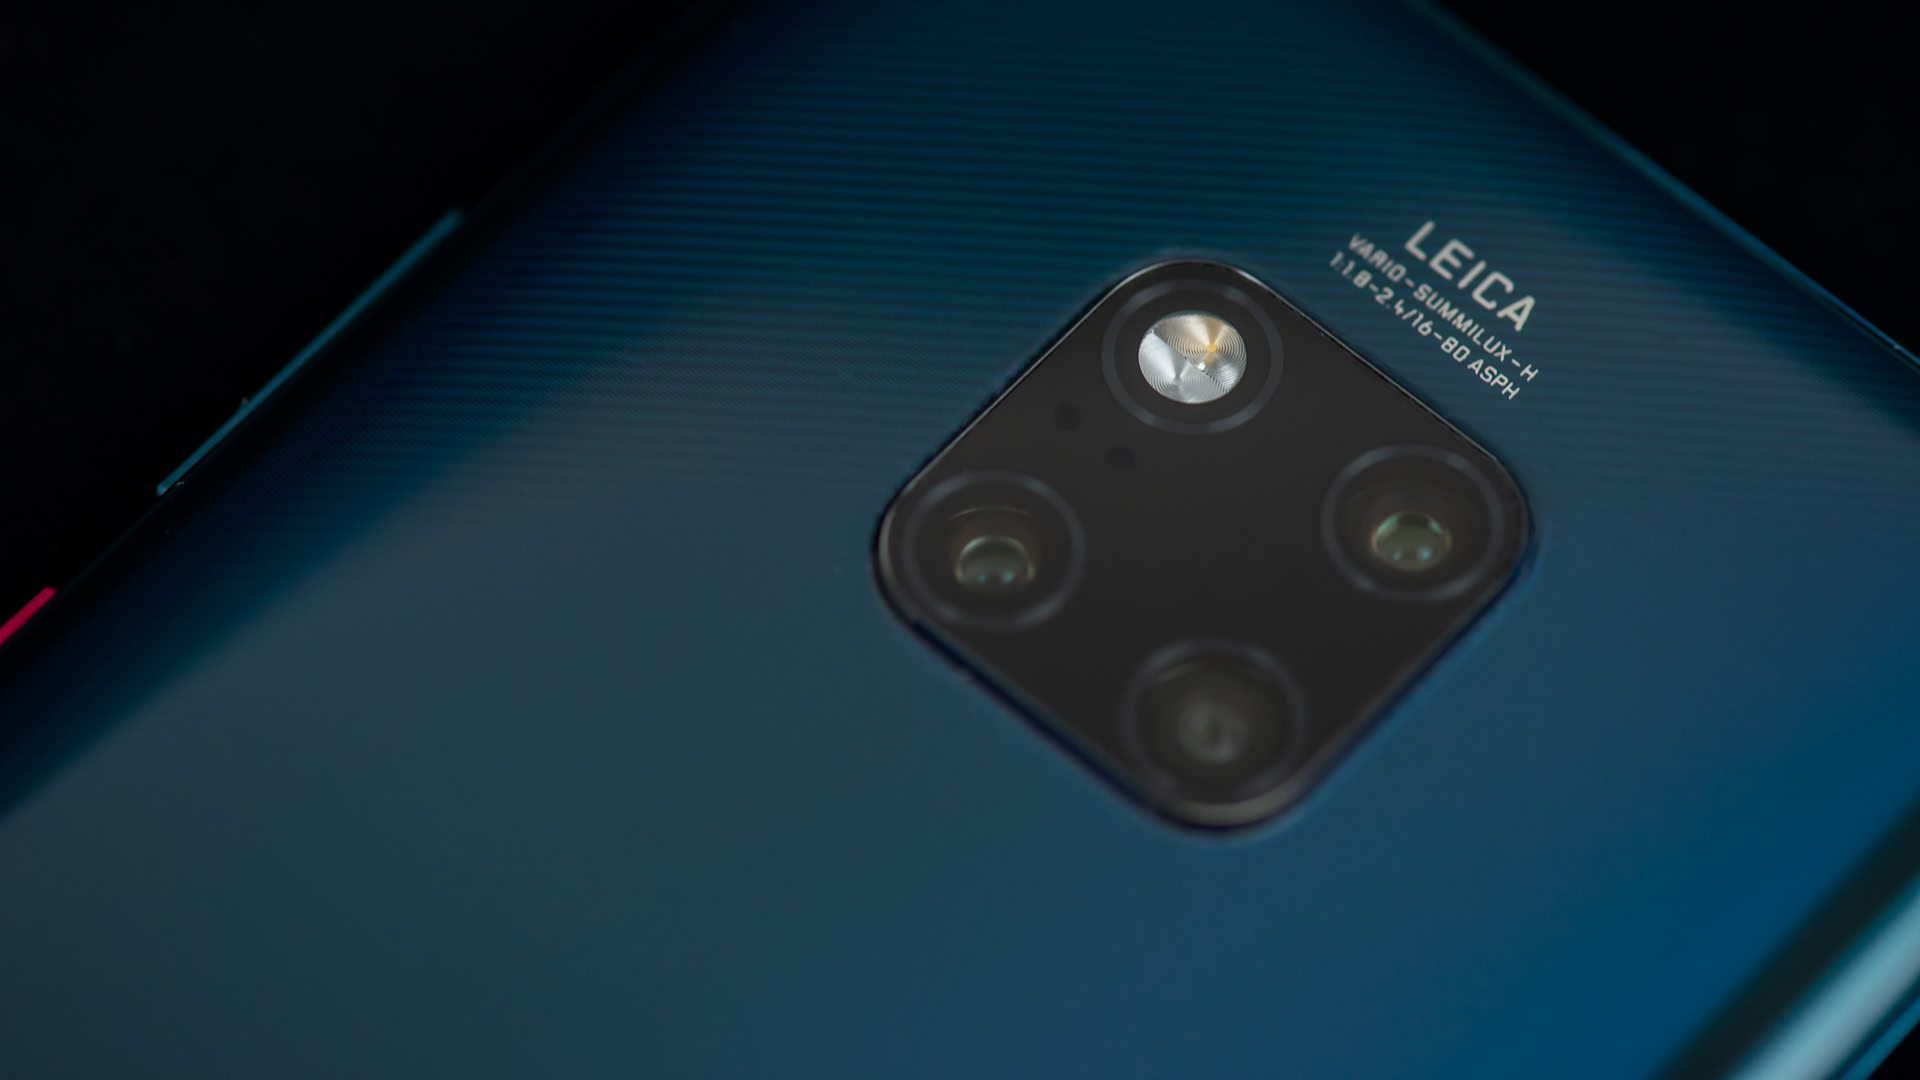 Huawei-Mate-20-Pro-Camera-Review-2reup.jpg